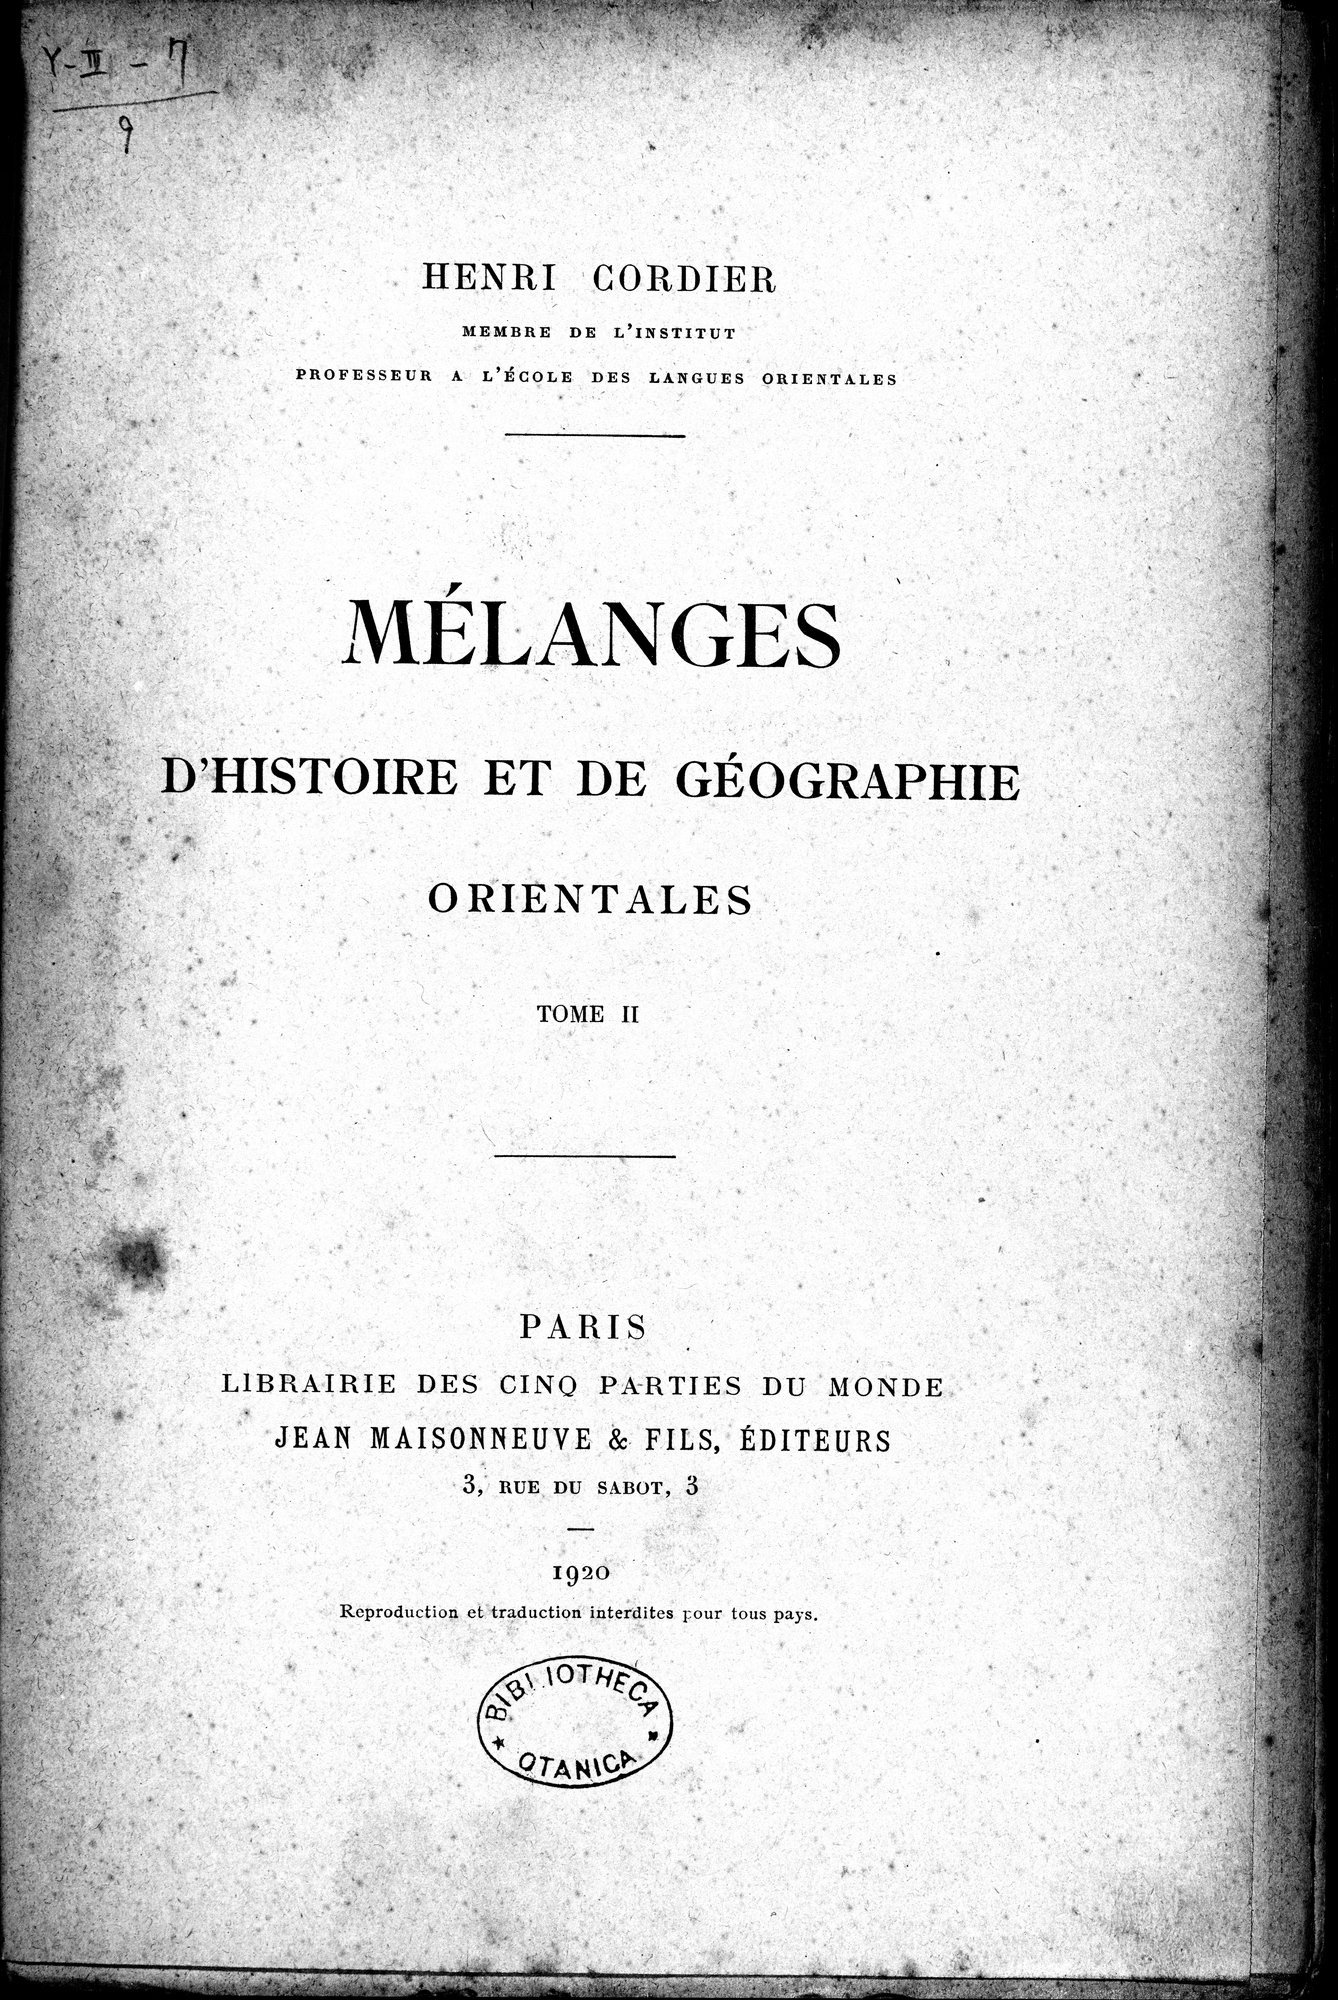 Mélanges d'Histoire et de Géographie Orientales : vol.2 / Page 7 (Grayscale High Resolution Image)